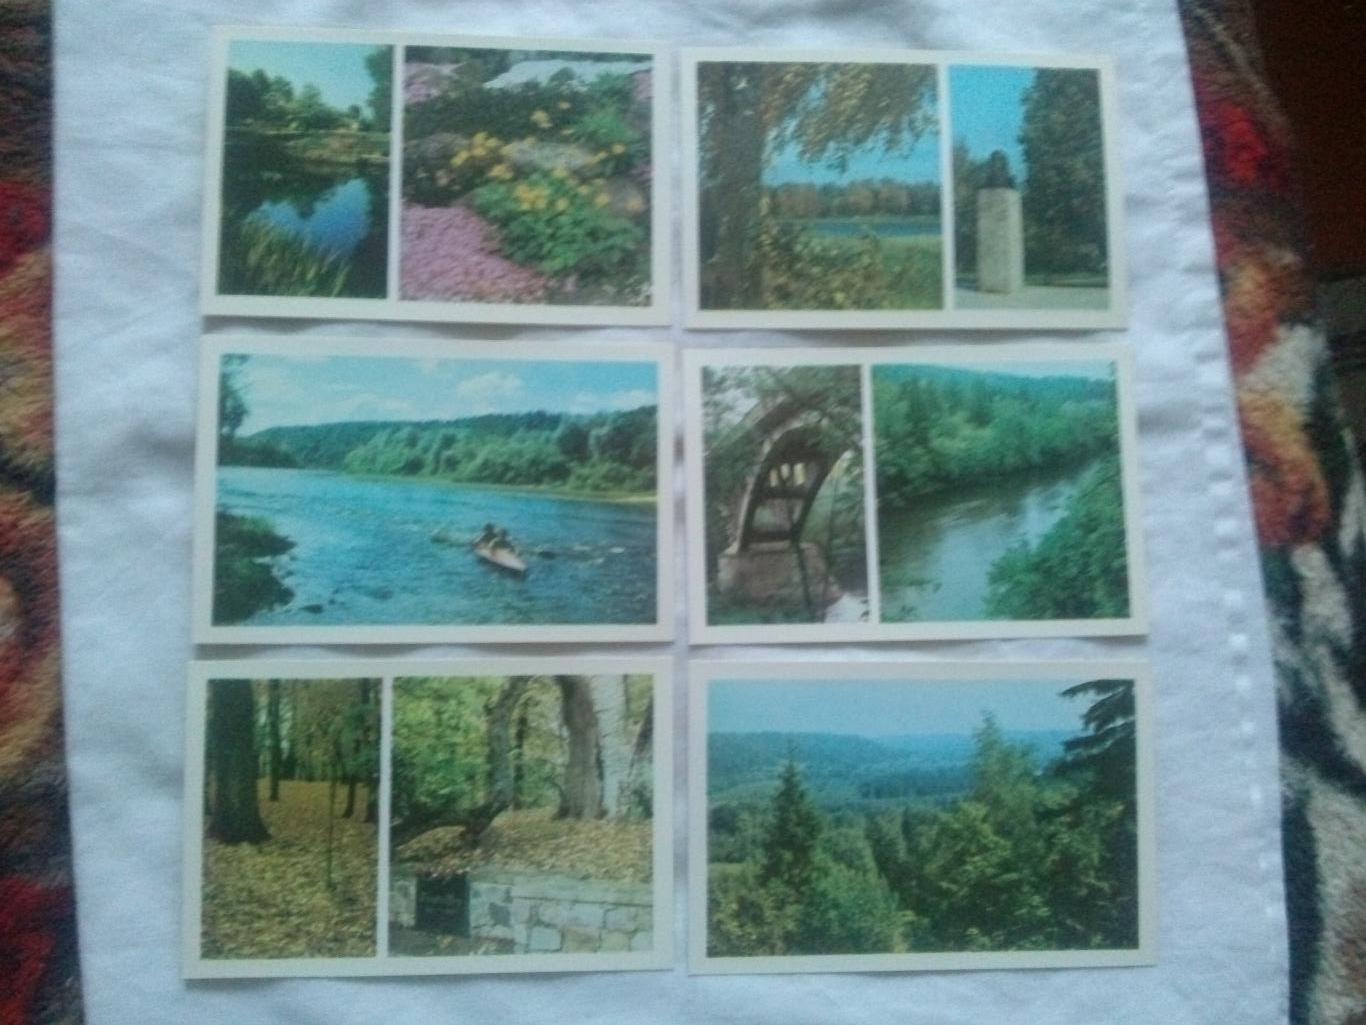 Памятные места СССР : Сигулда (Sigulda) 1984 г. полный набор- 18 открыток Латвия 3